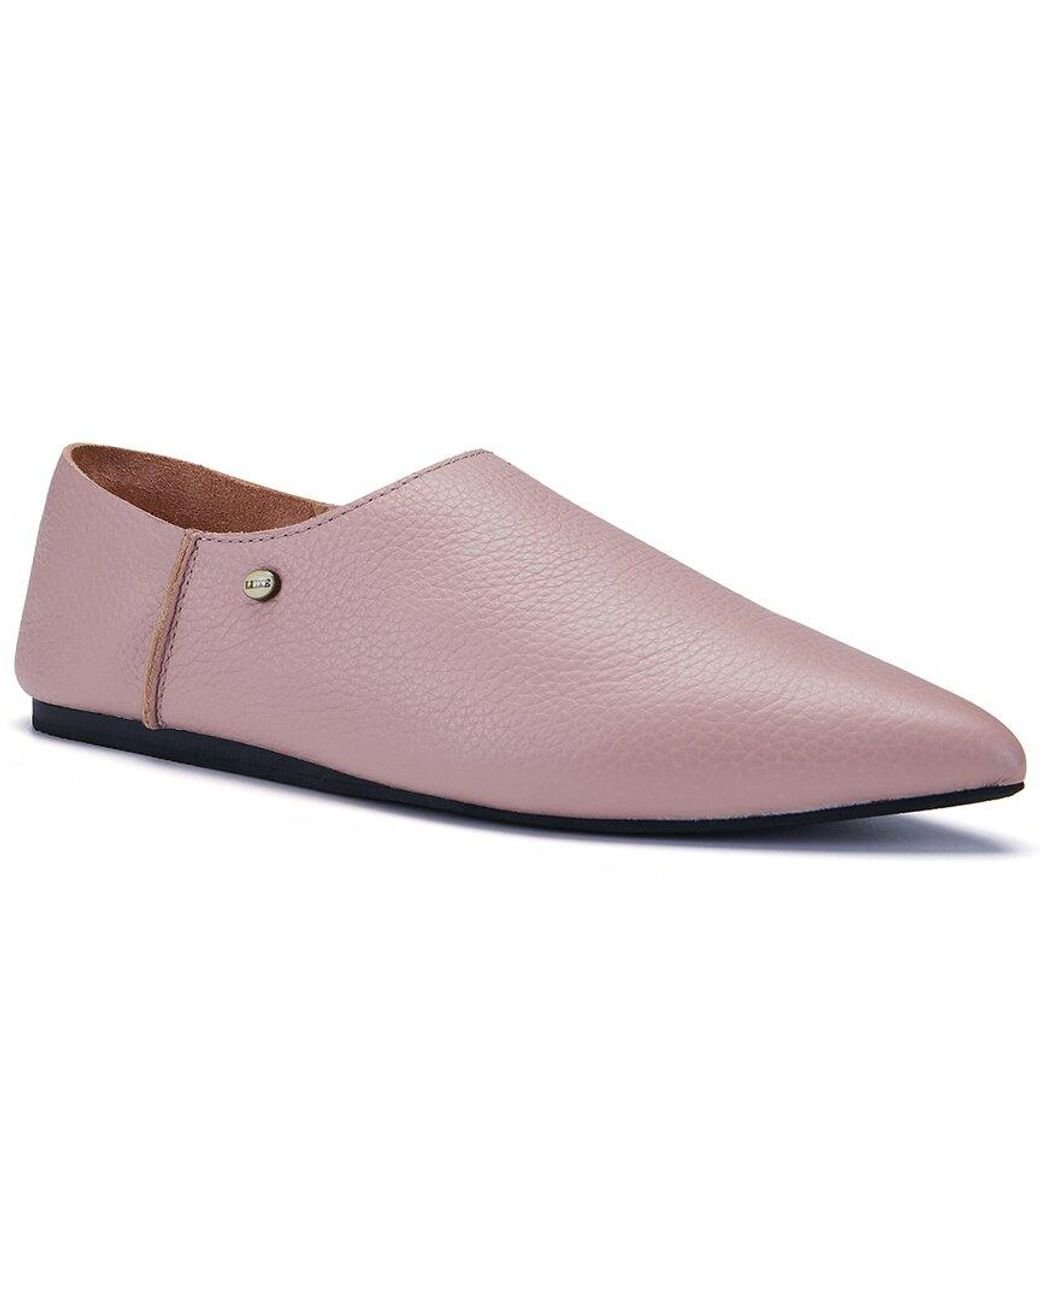 Australia Luxe Kuta Leather Slip-on in Pink | Lyst